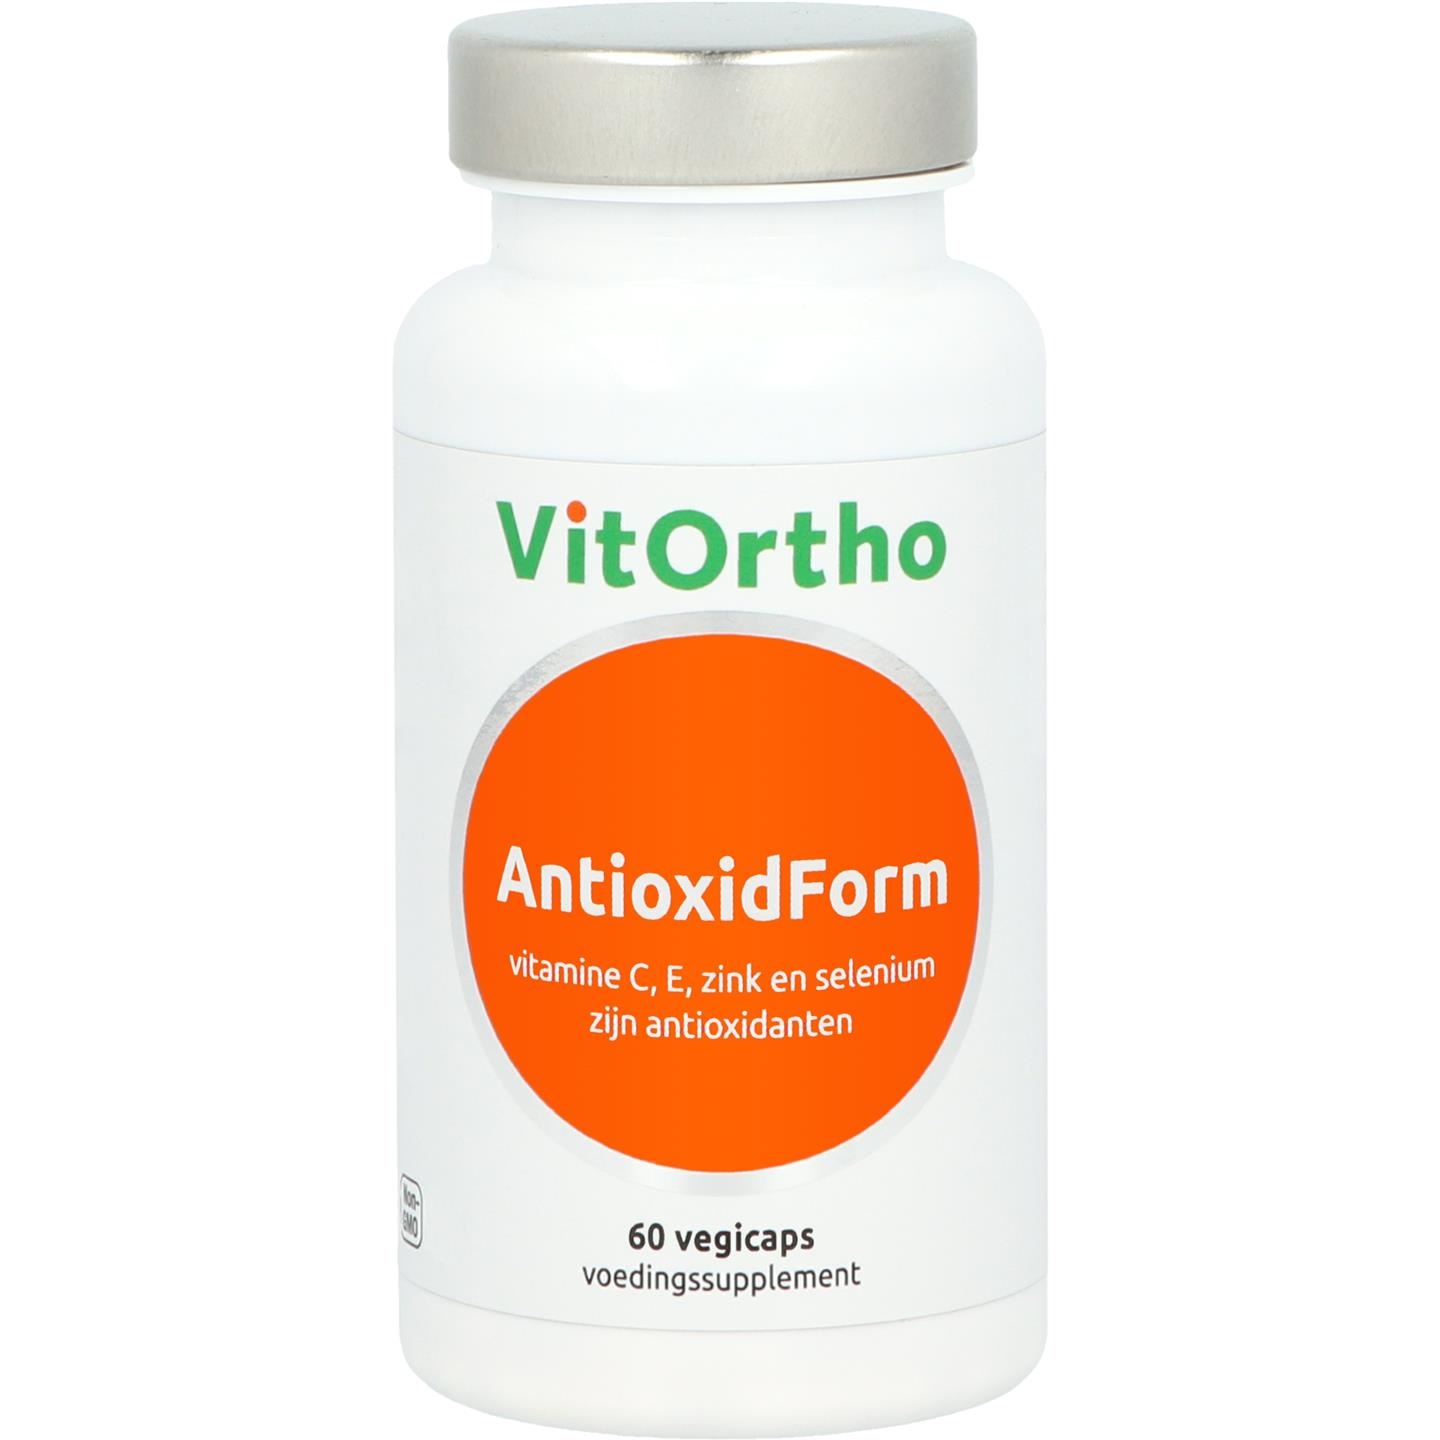 Vitortho VitOrtho AntioxidForm Ehemals antioxidative Formel (60 vegetarische Kapseln)